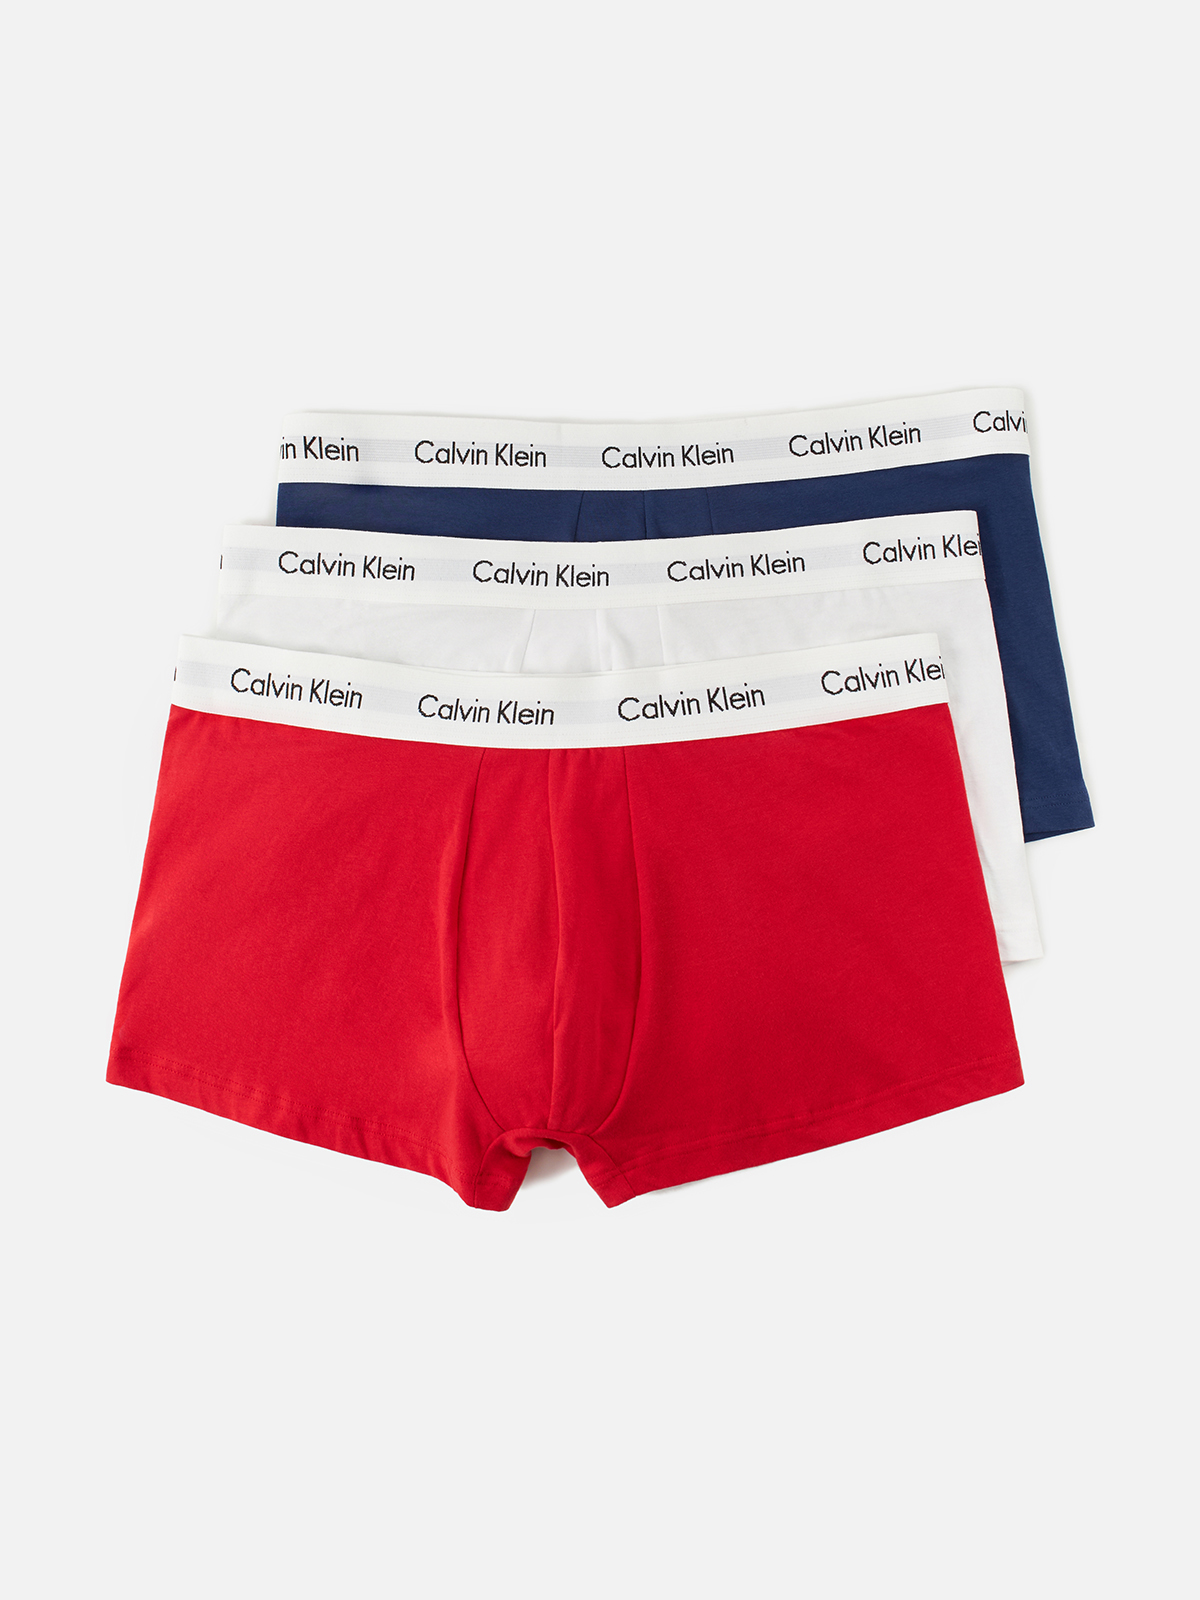 Комплект трусов мужских Calvin Klein Underwear 0000U2664G белых, красных, синих L